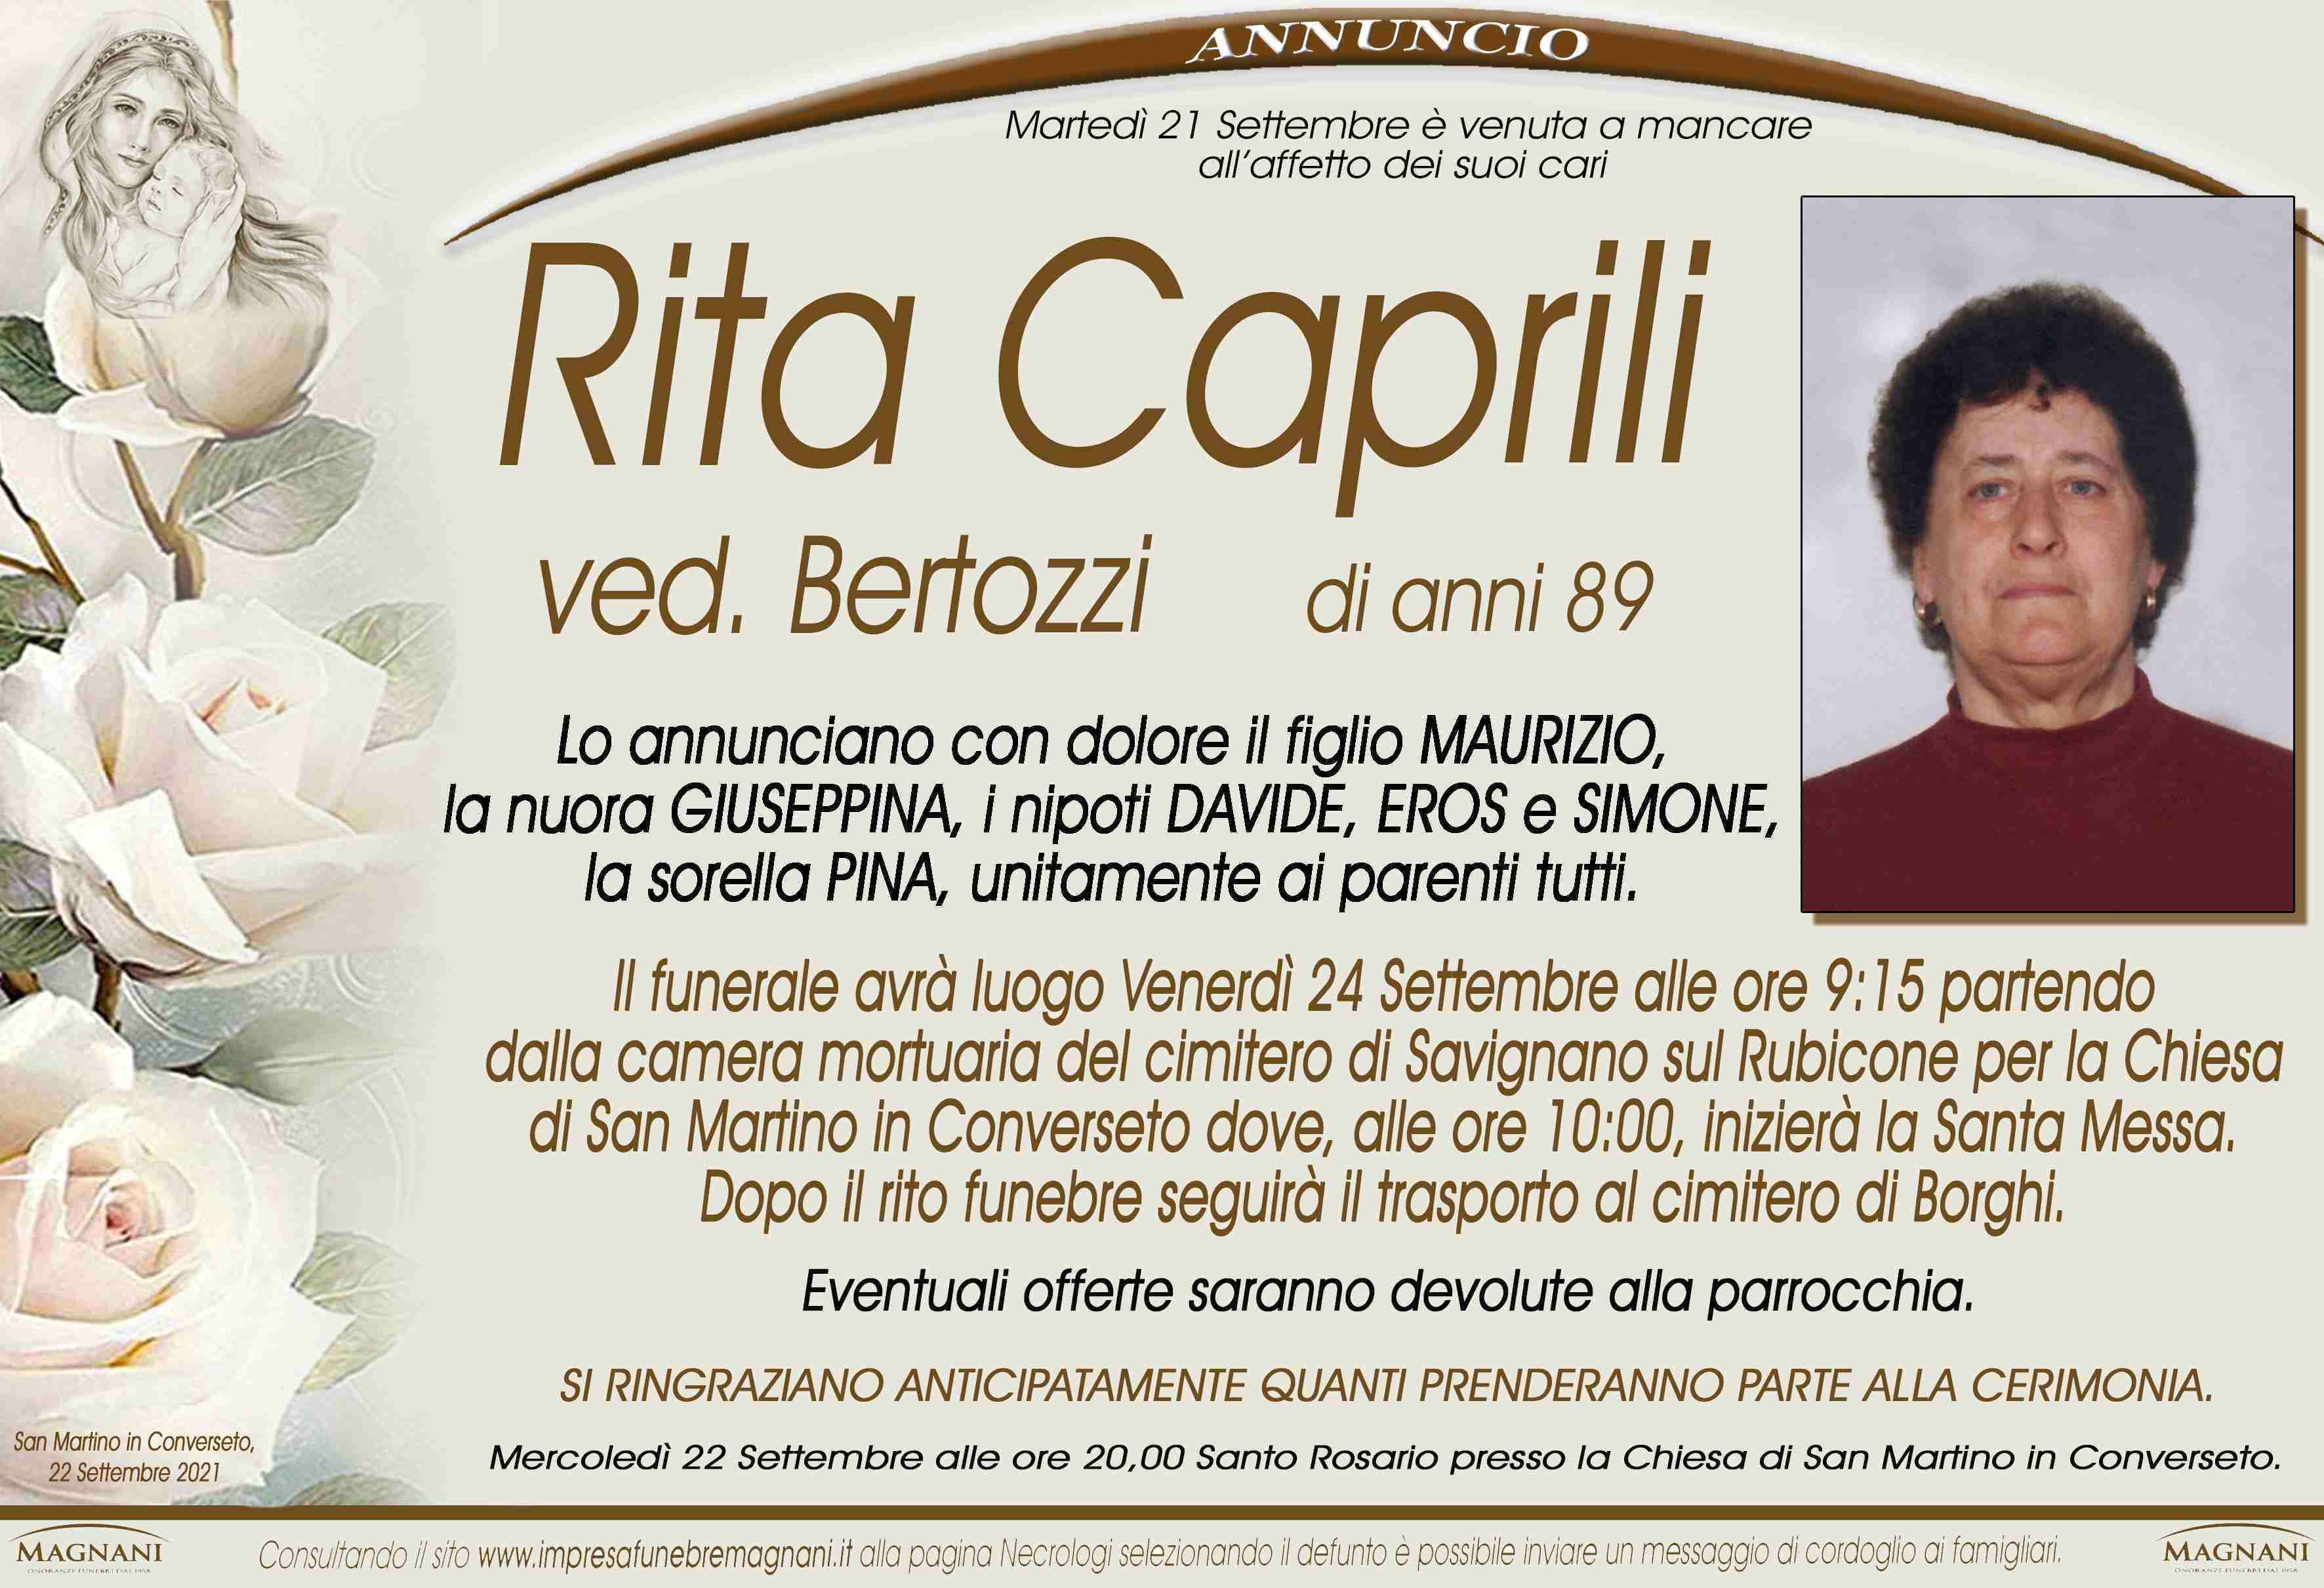 Rita Caprili